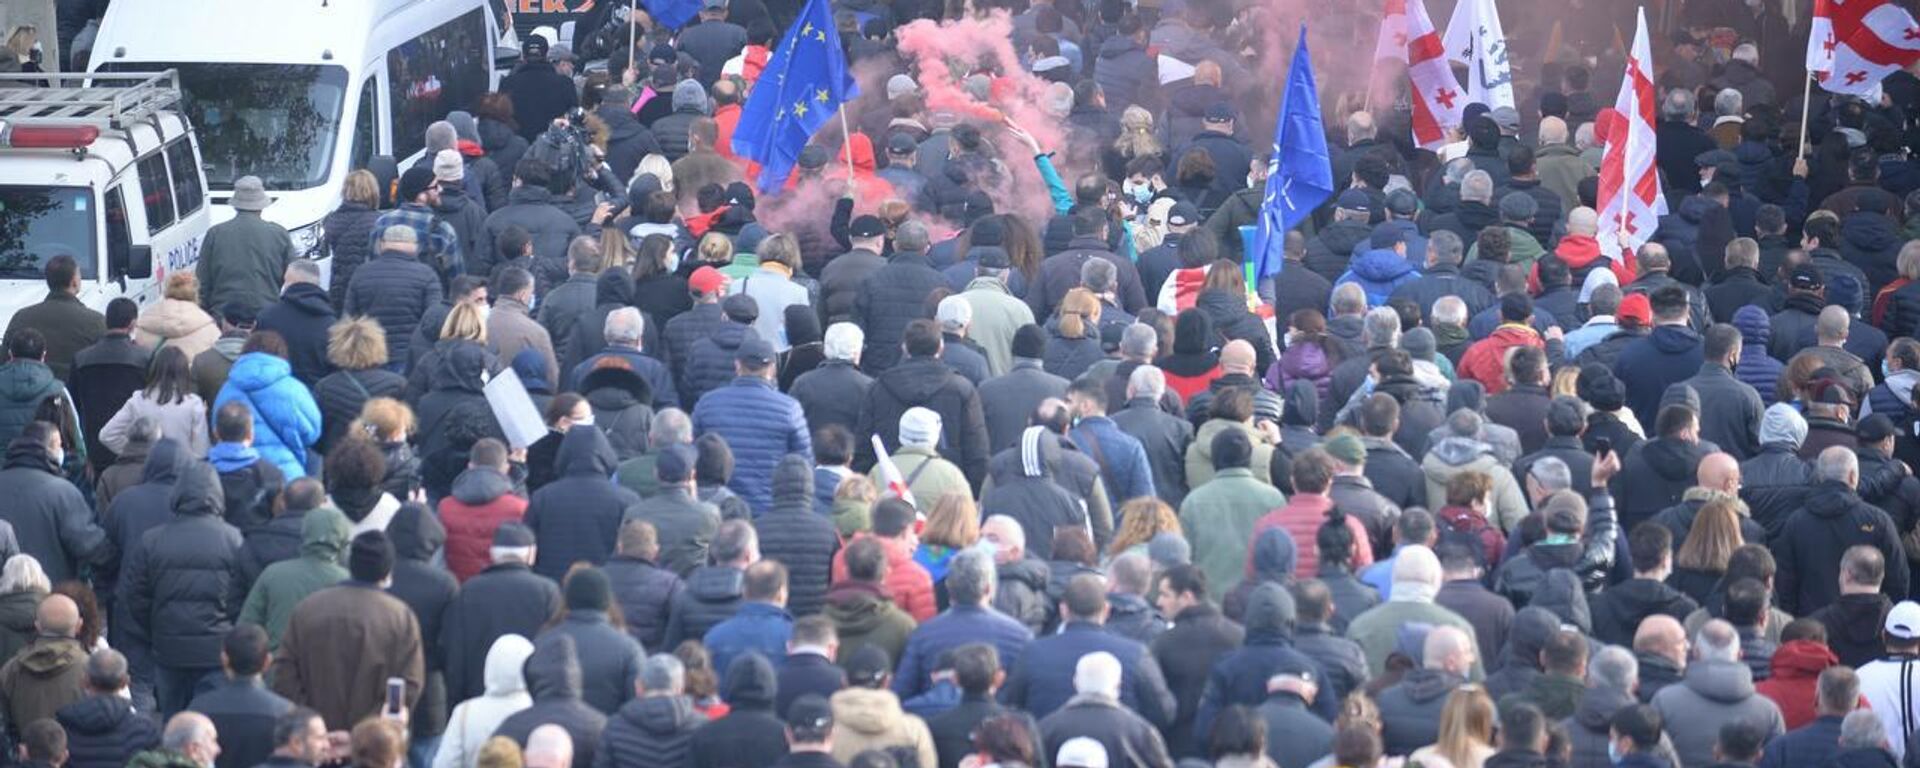 Акция протеста сторонников ЕНД и оппозиции в поддержку Саакашвили. Шествие по центру города - Sputnik Грузия, 1920, 18.11.2021